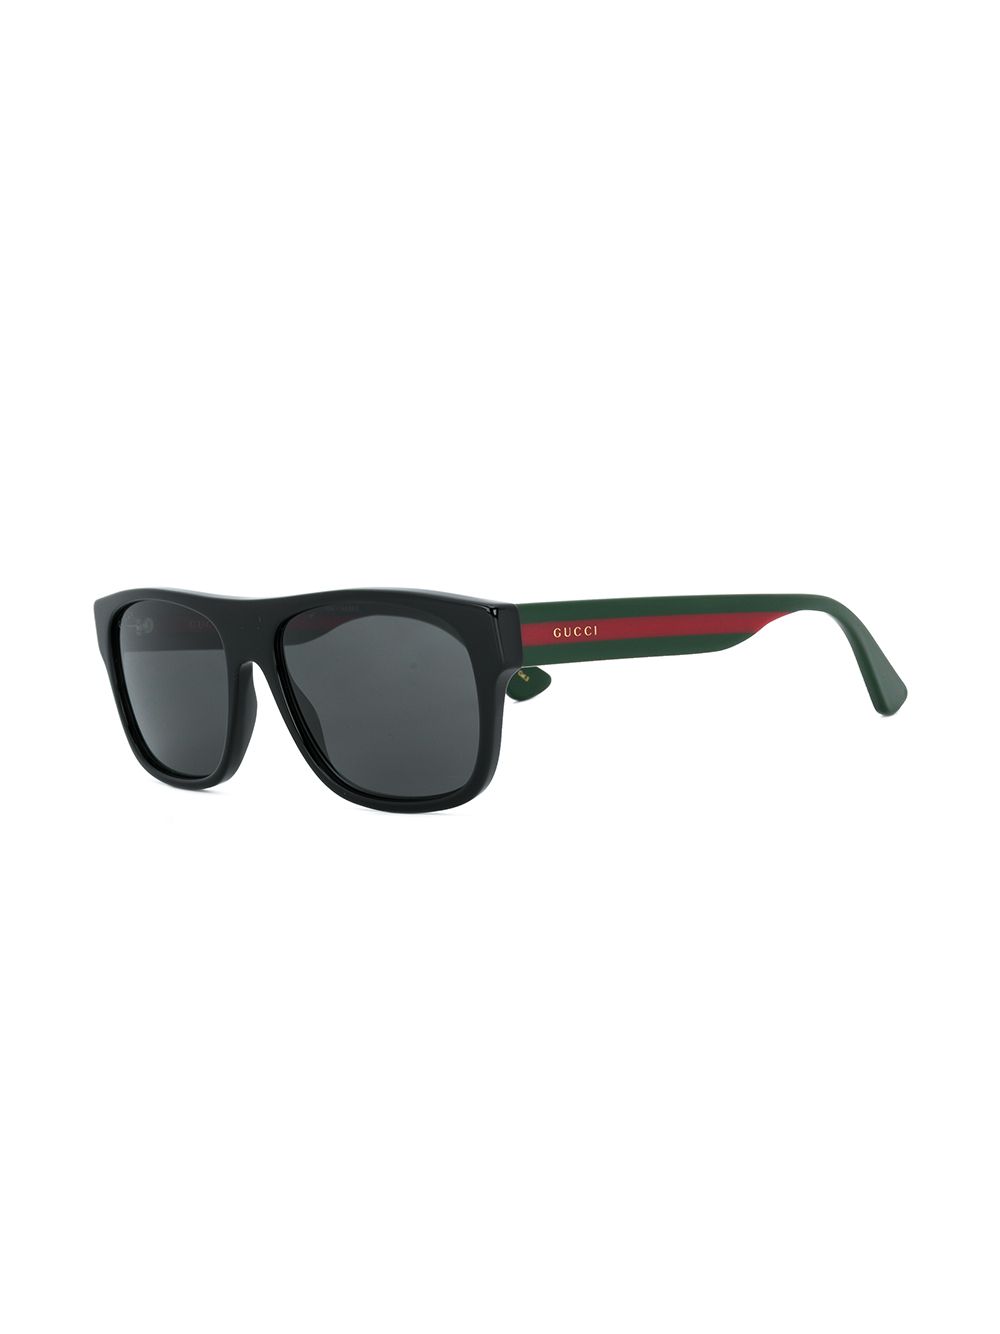 фото Gucci Eyewear солнцезащитные очки в квадратной оправе с полоской Web